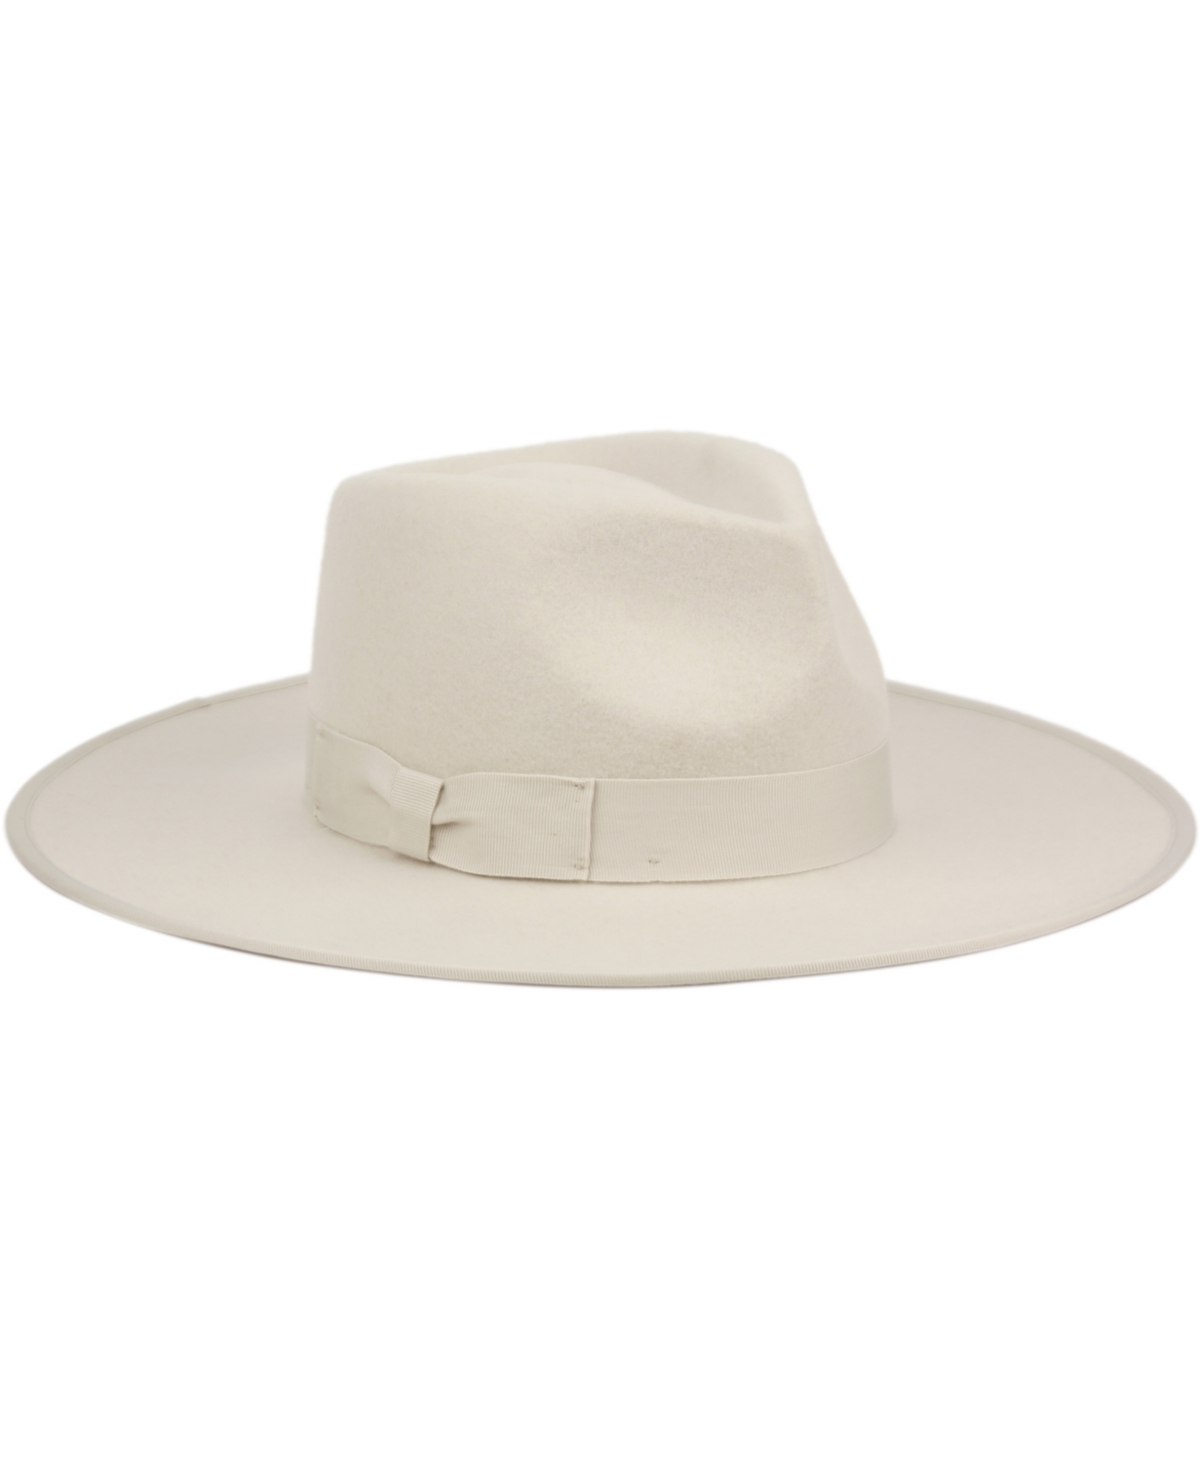 Angela & William Women's Wide Brim Felt Rancher Fedora Hat In Light Gray